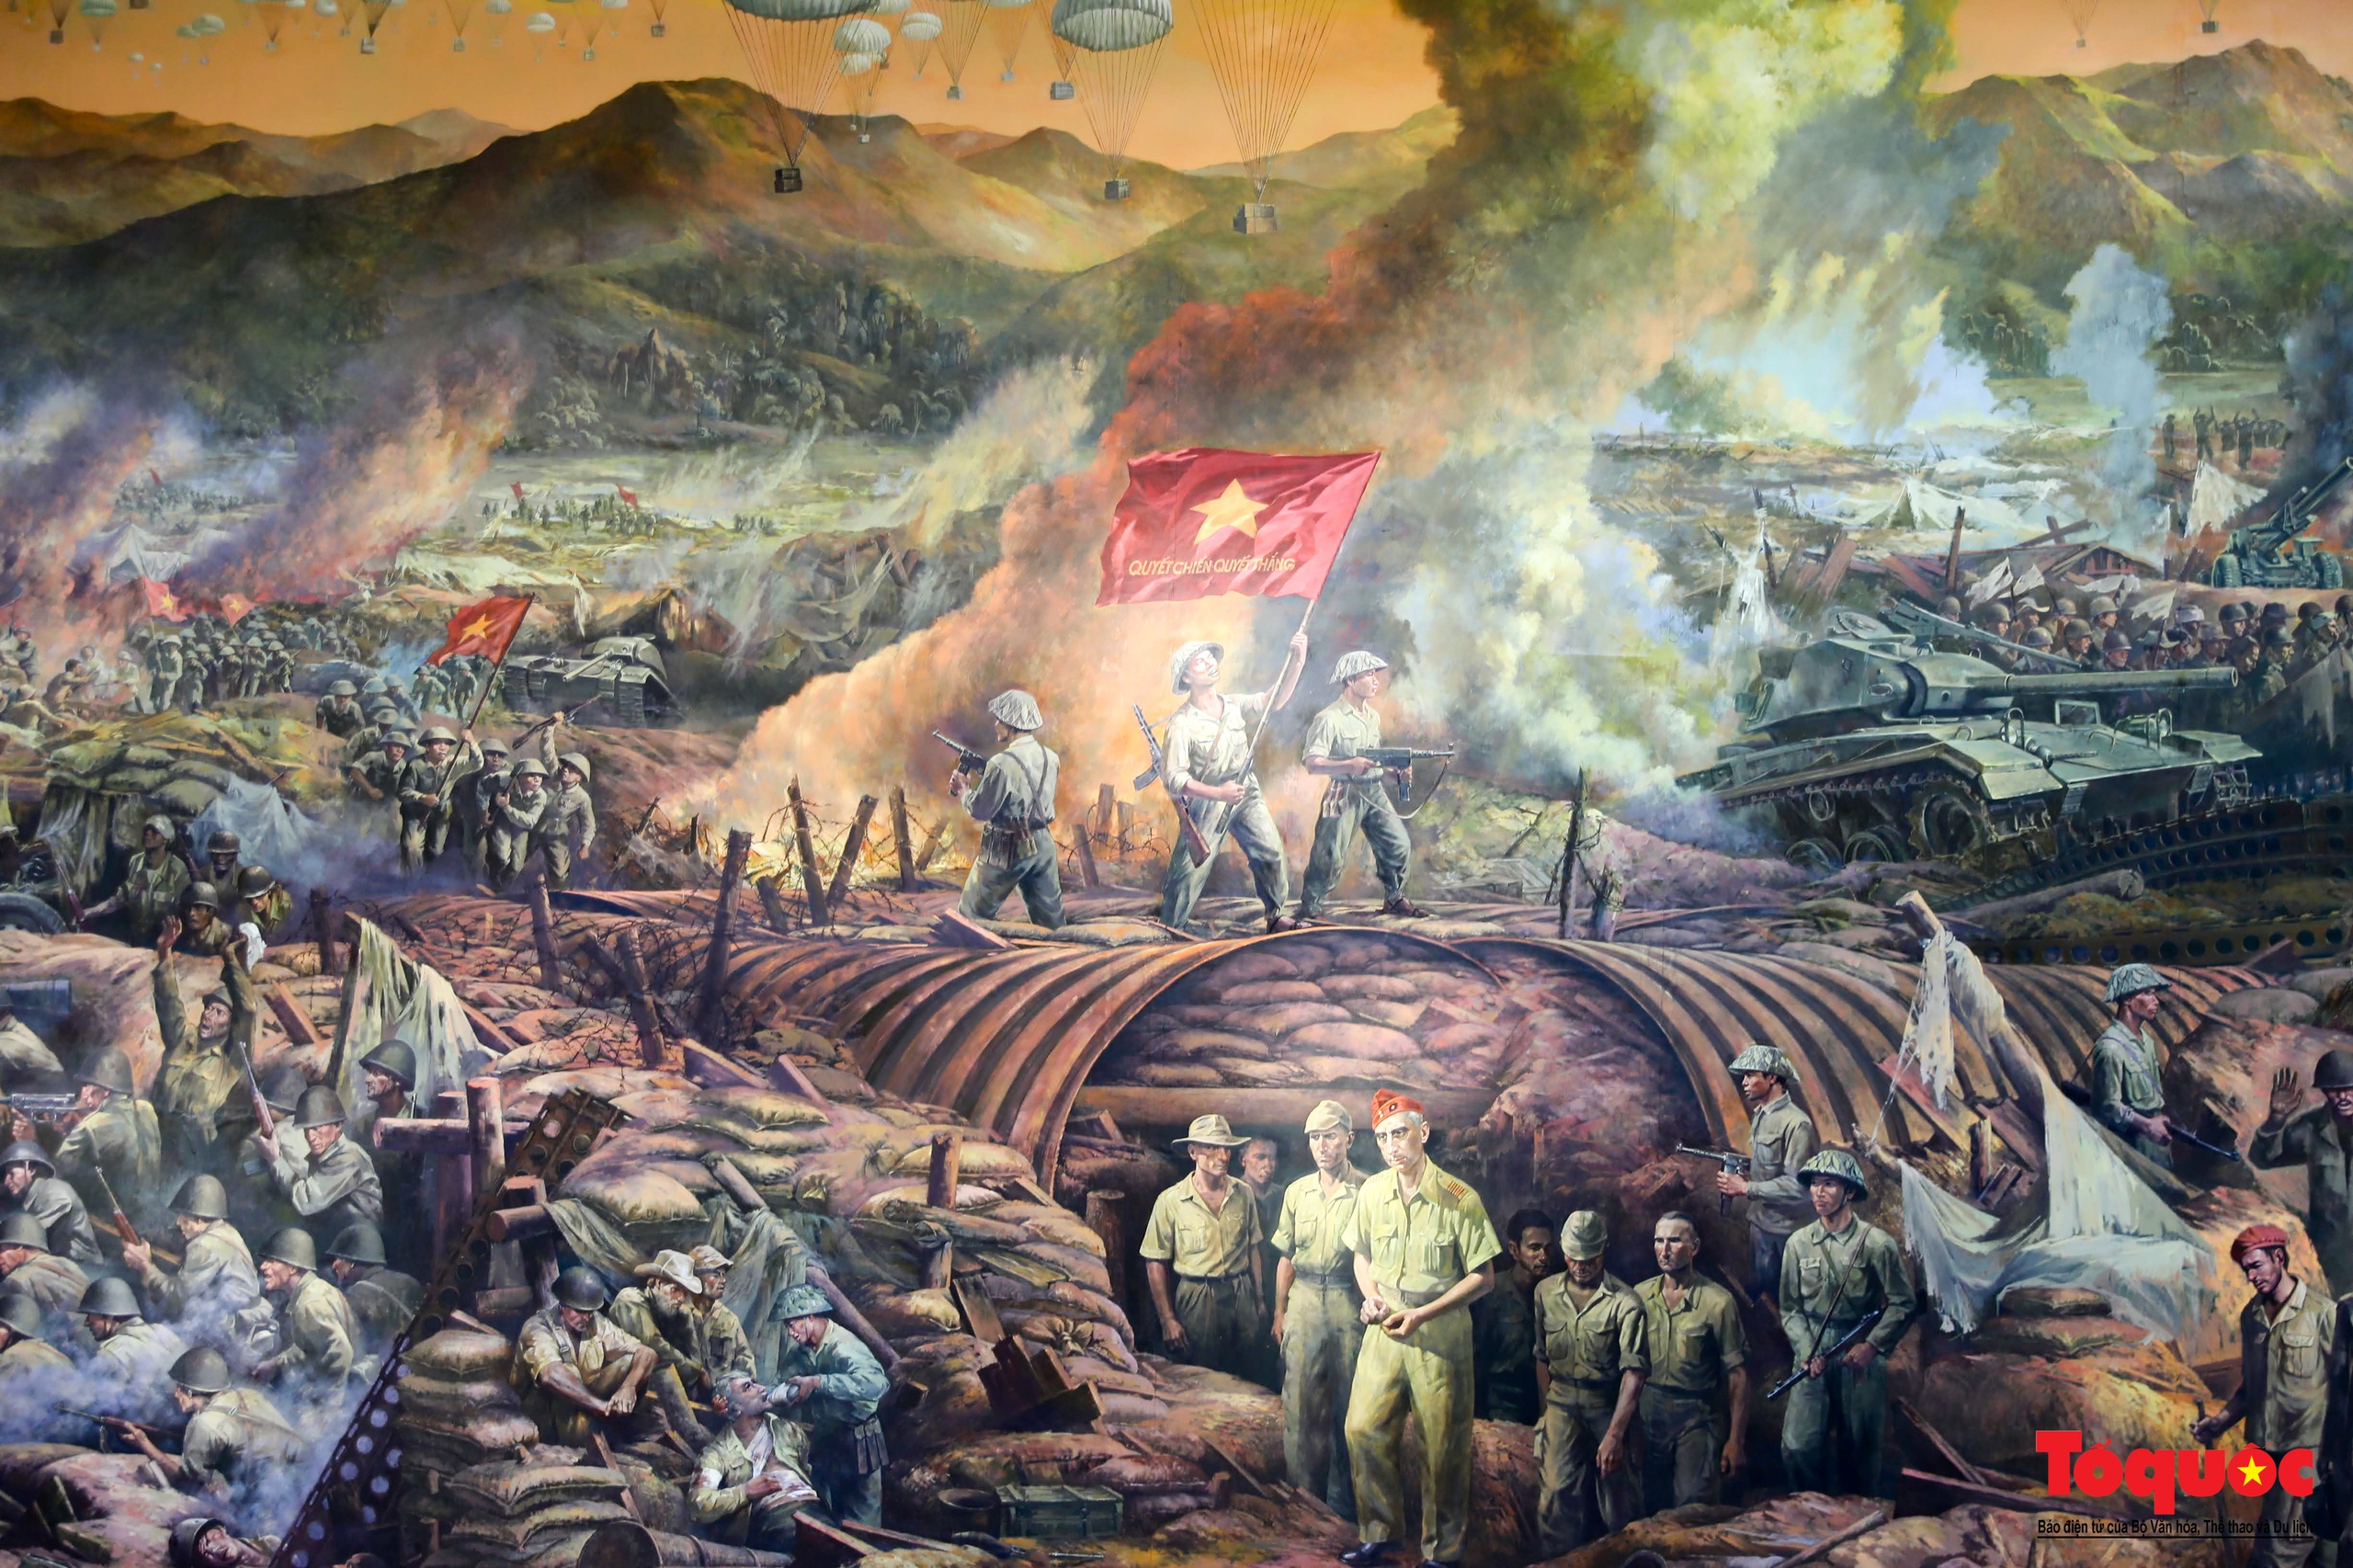 Du khách xúc động khi xem bức tranh toàn cảnh tái hiện chiến dịch Điện Biên Phủ lịch sử - Ảnh 19.